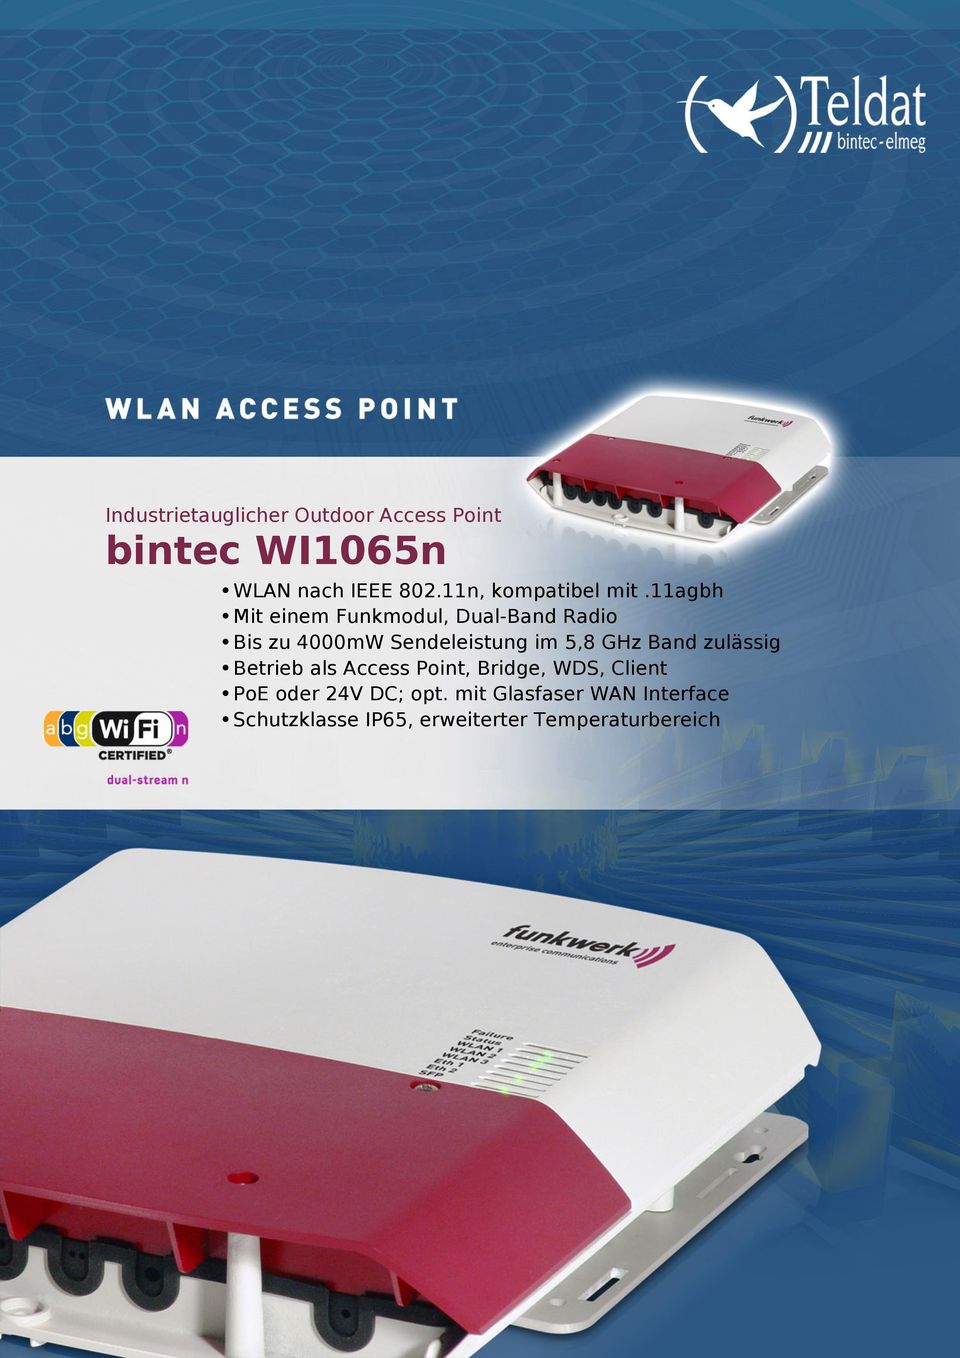 GHz Band zulässig Betrieb als Access Point, Bridge, WDS, Client PoE oder 24V DC;